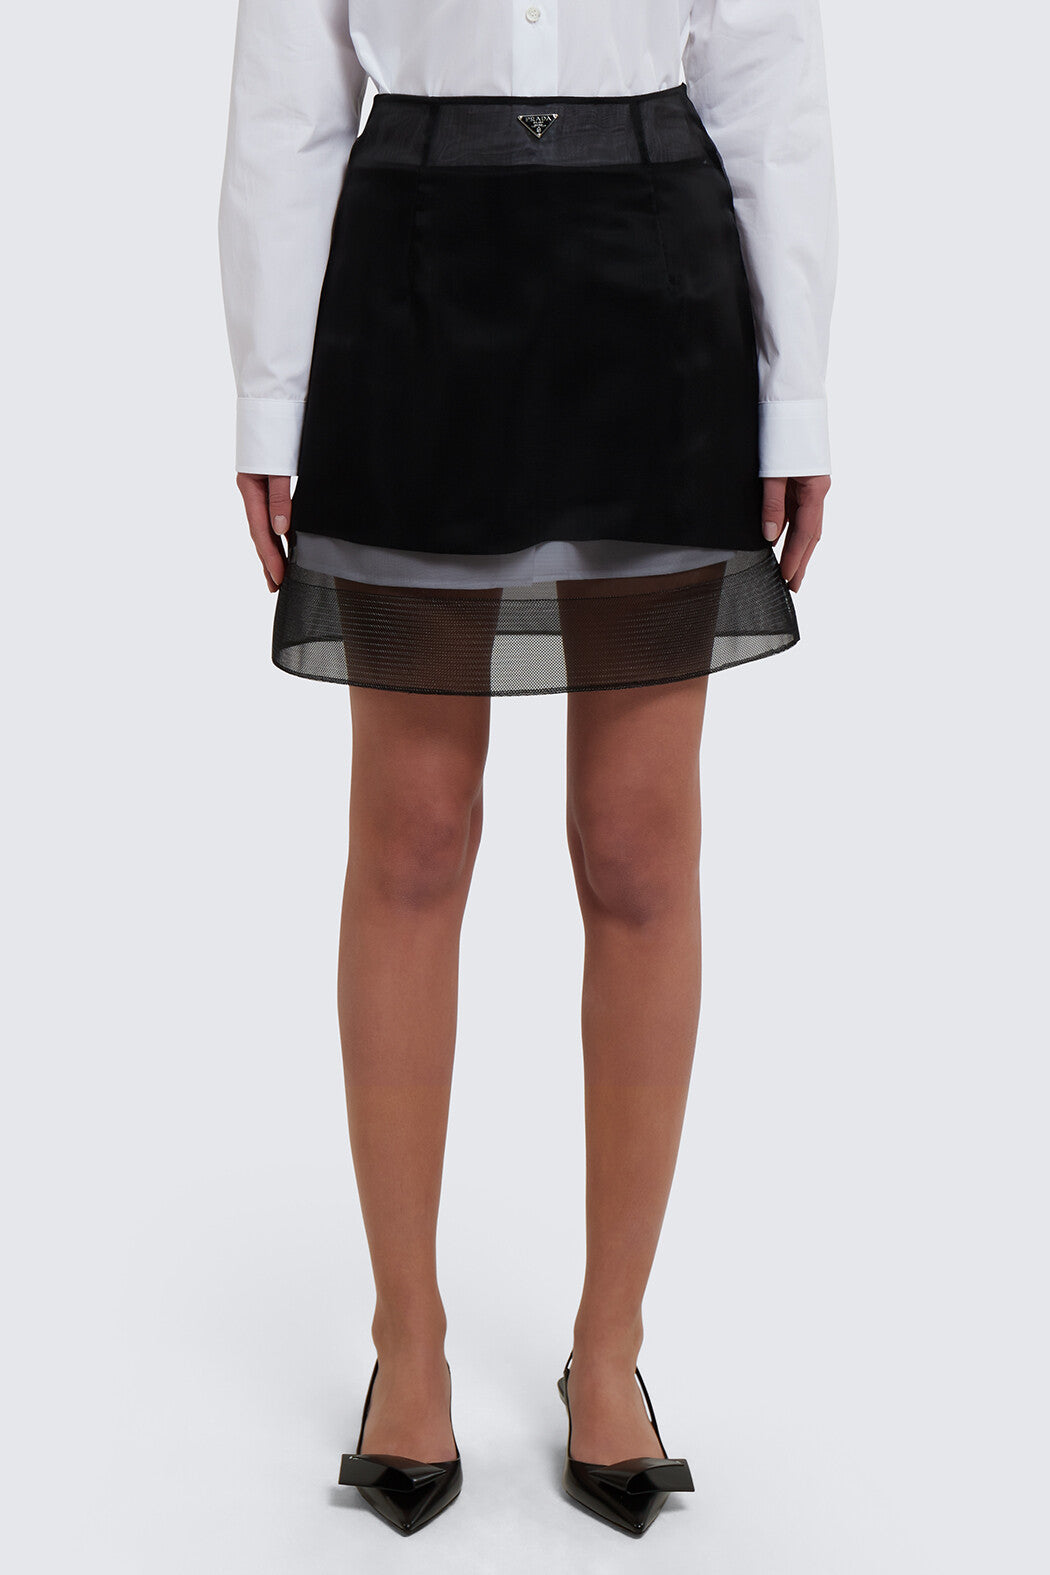 Wool and Crinoline Skirt